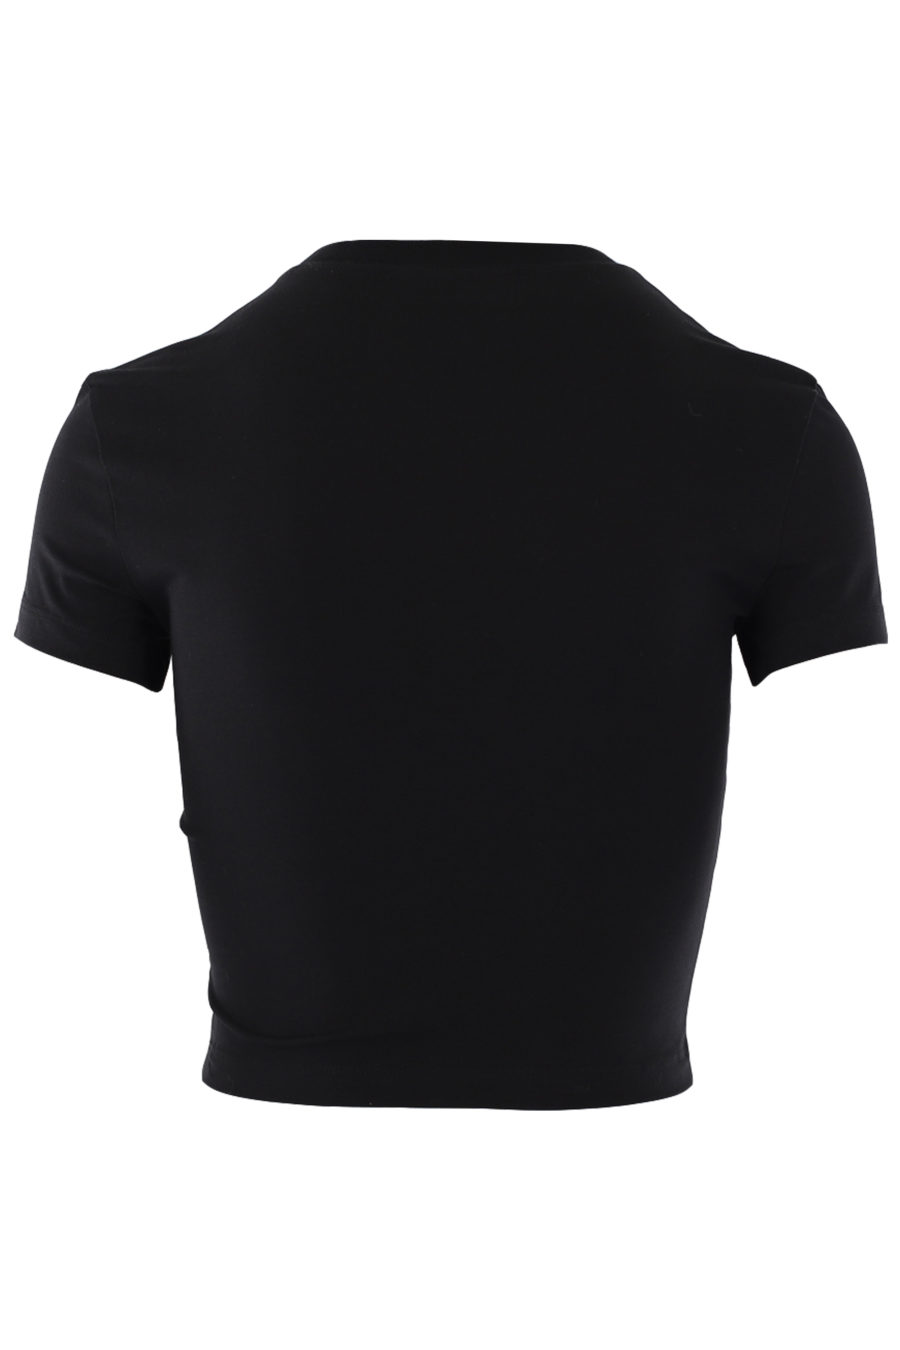 T-shirt noir avec logo violet irisé - IMG 0744